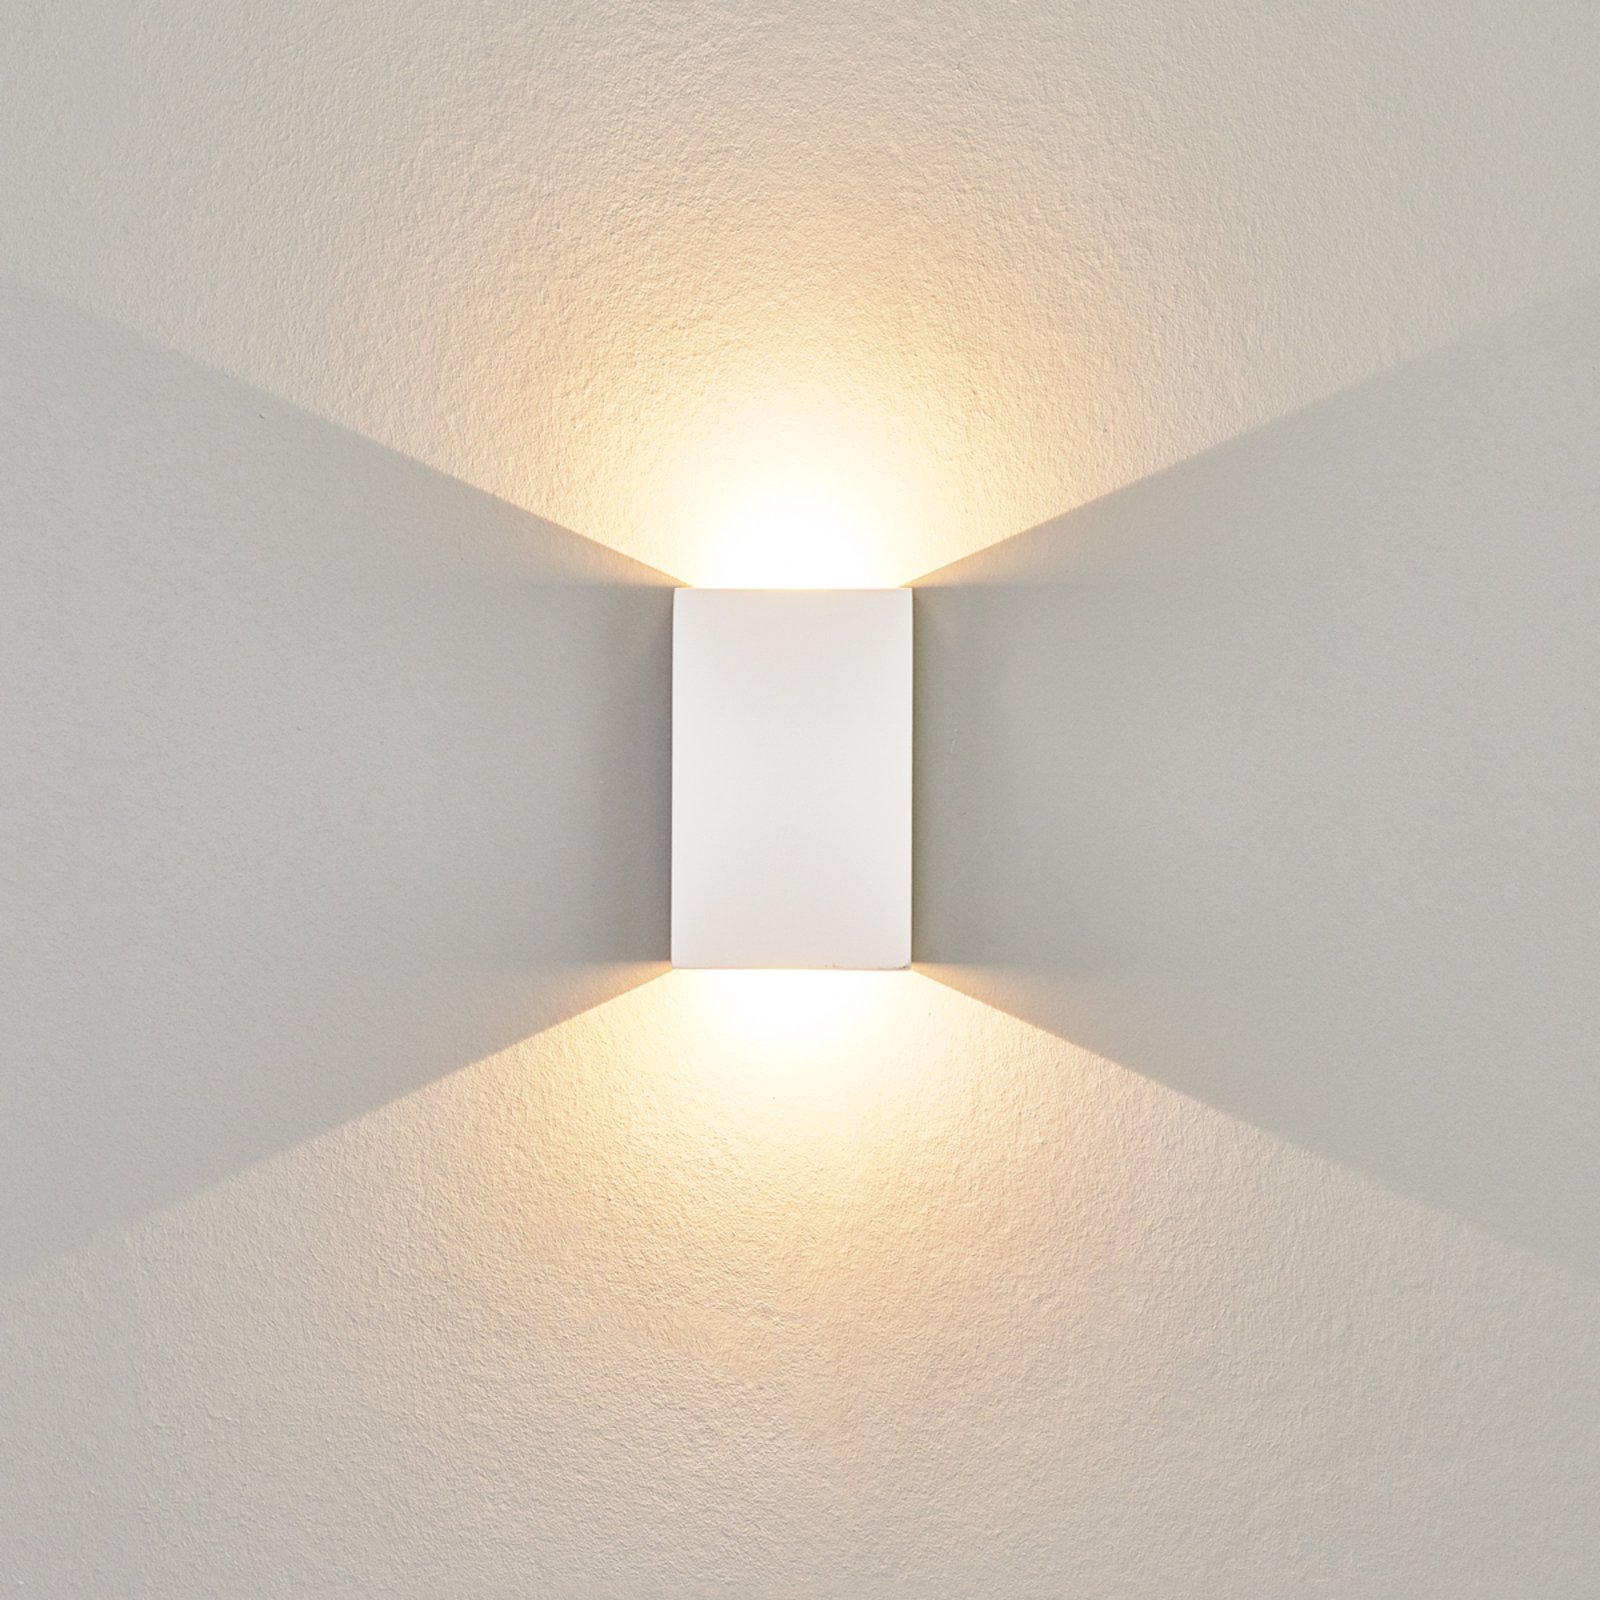 LED-vägglampa Fabiola av gips, höjd 16 cm